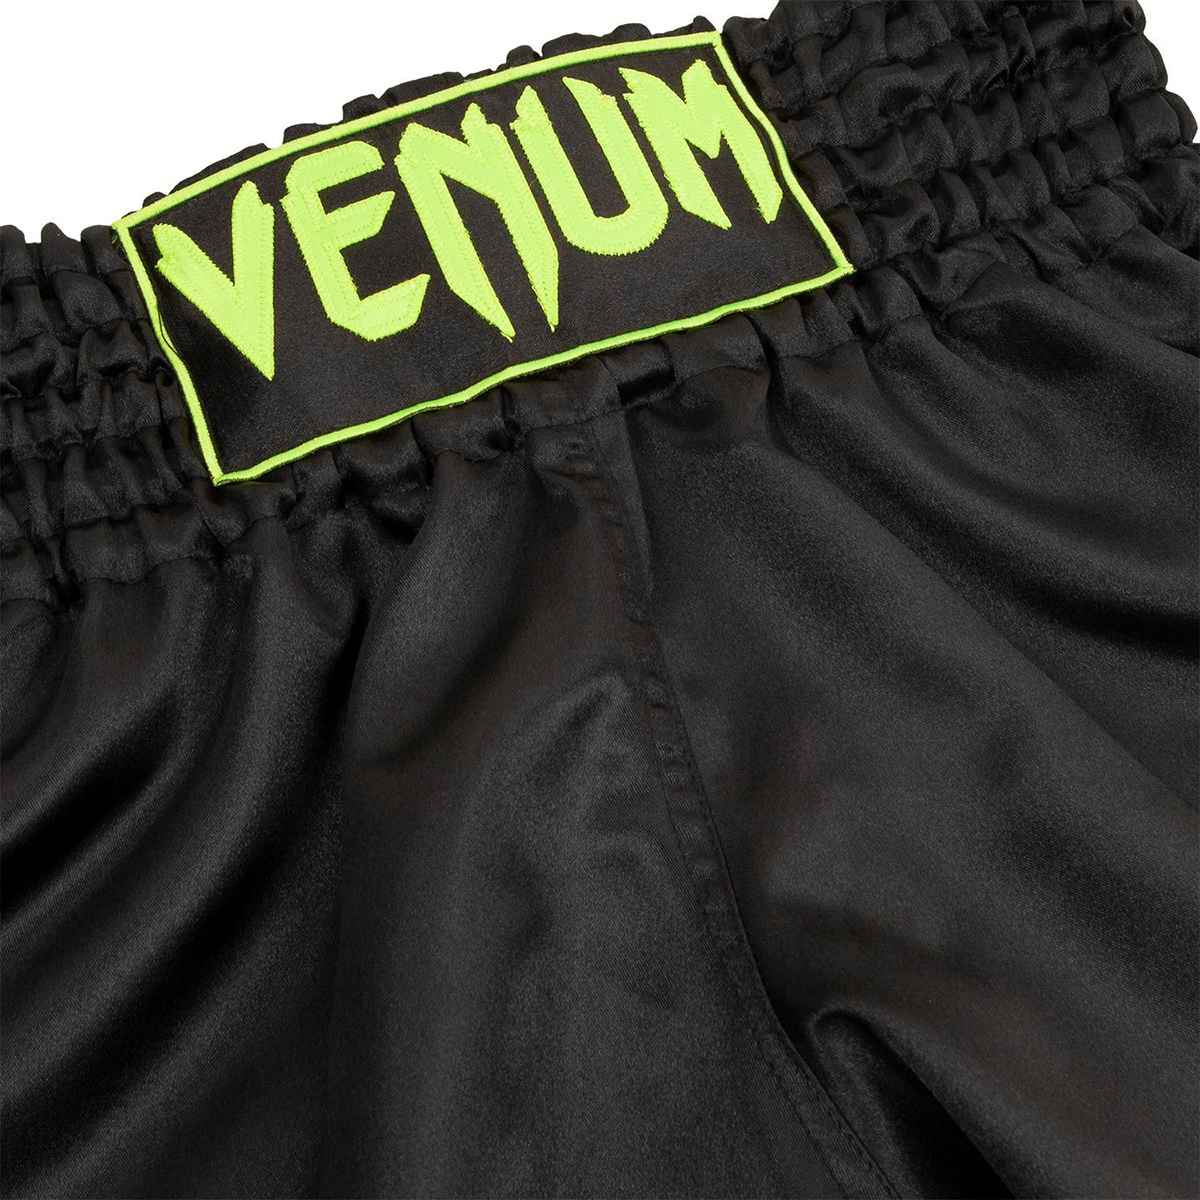 Venum Classic ムエタイショーツ - ブラック/ネオ・イエロー